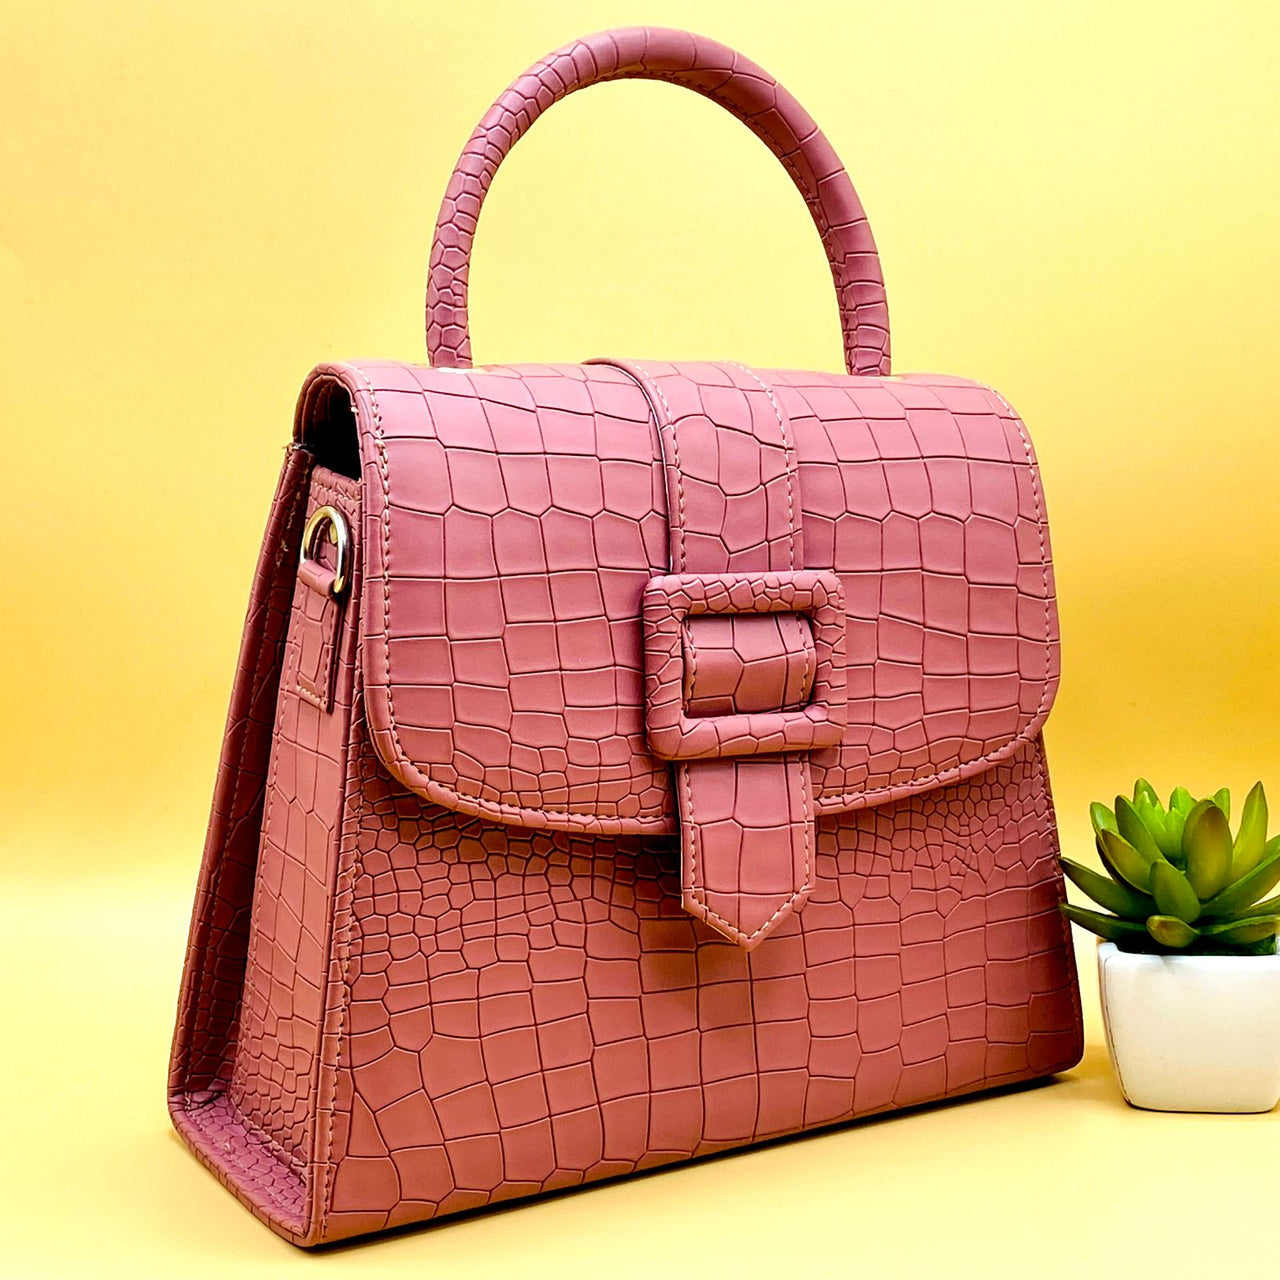 Formal Leather Woman Handbag